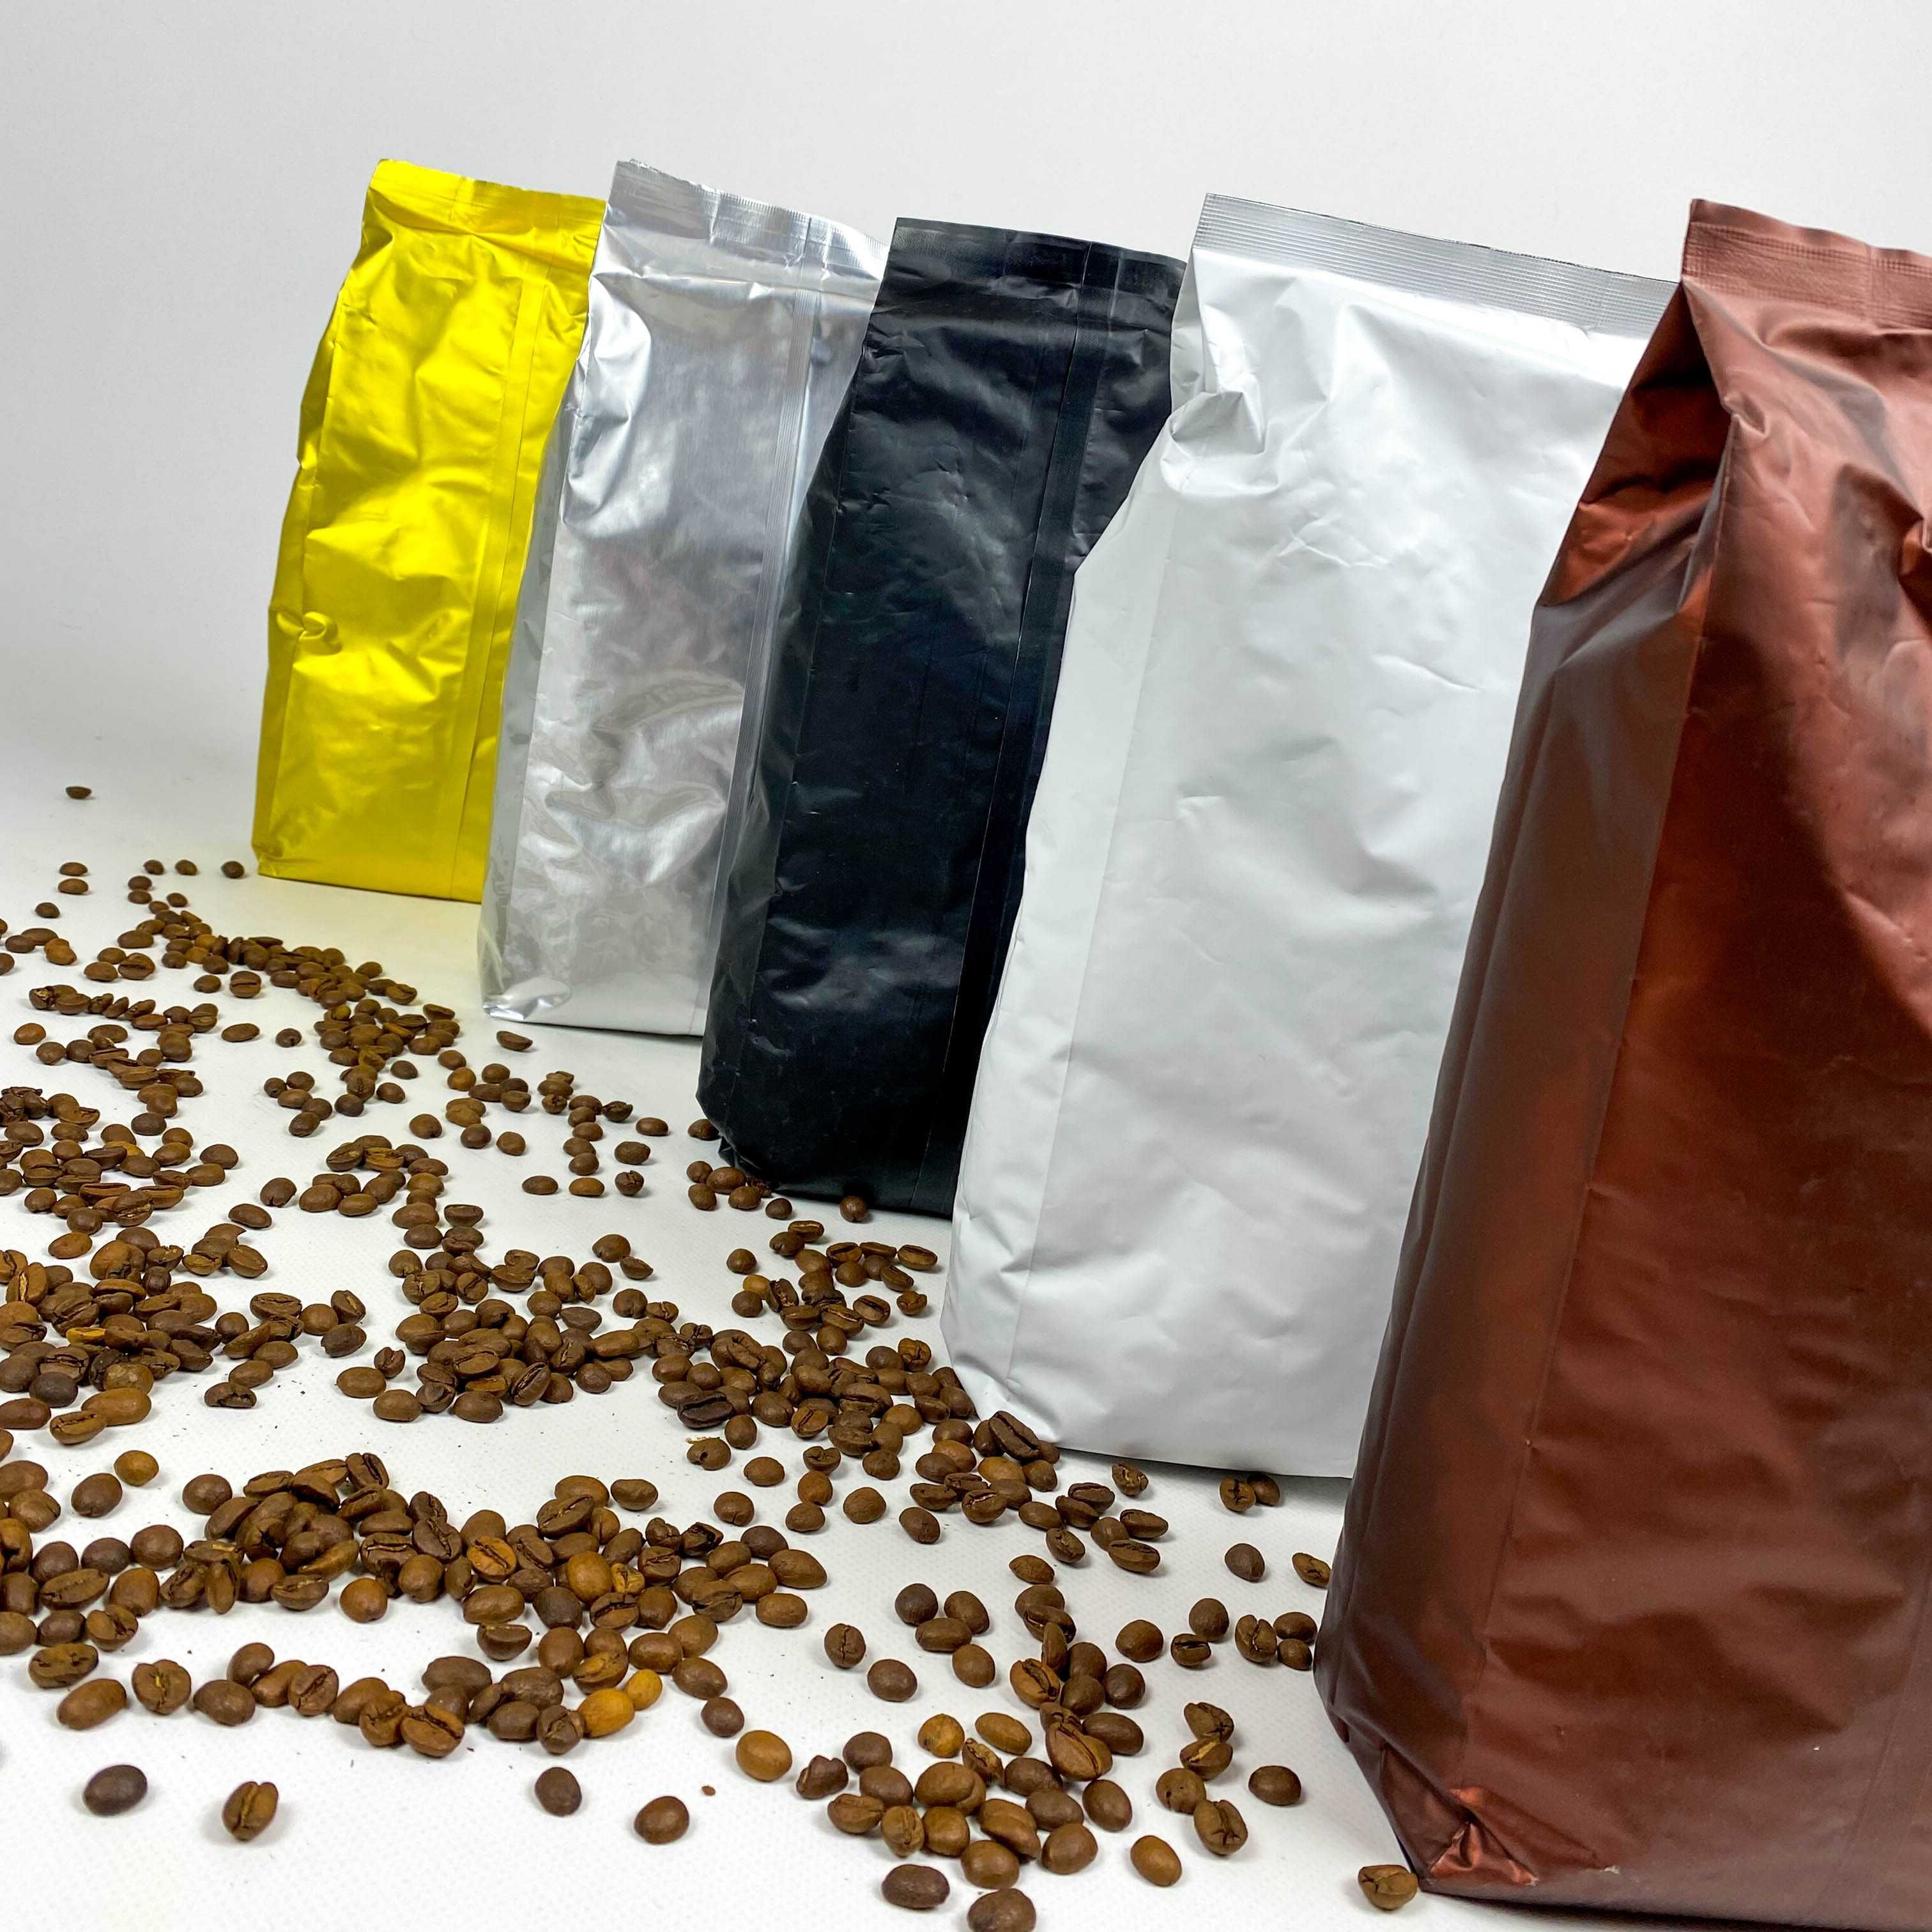 АКЦІЙНА Пропозиція!!! Кавові зерна 50%50% Monako по Оптовій ціні!Кава